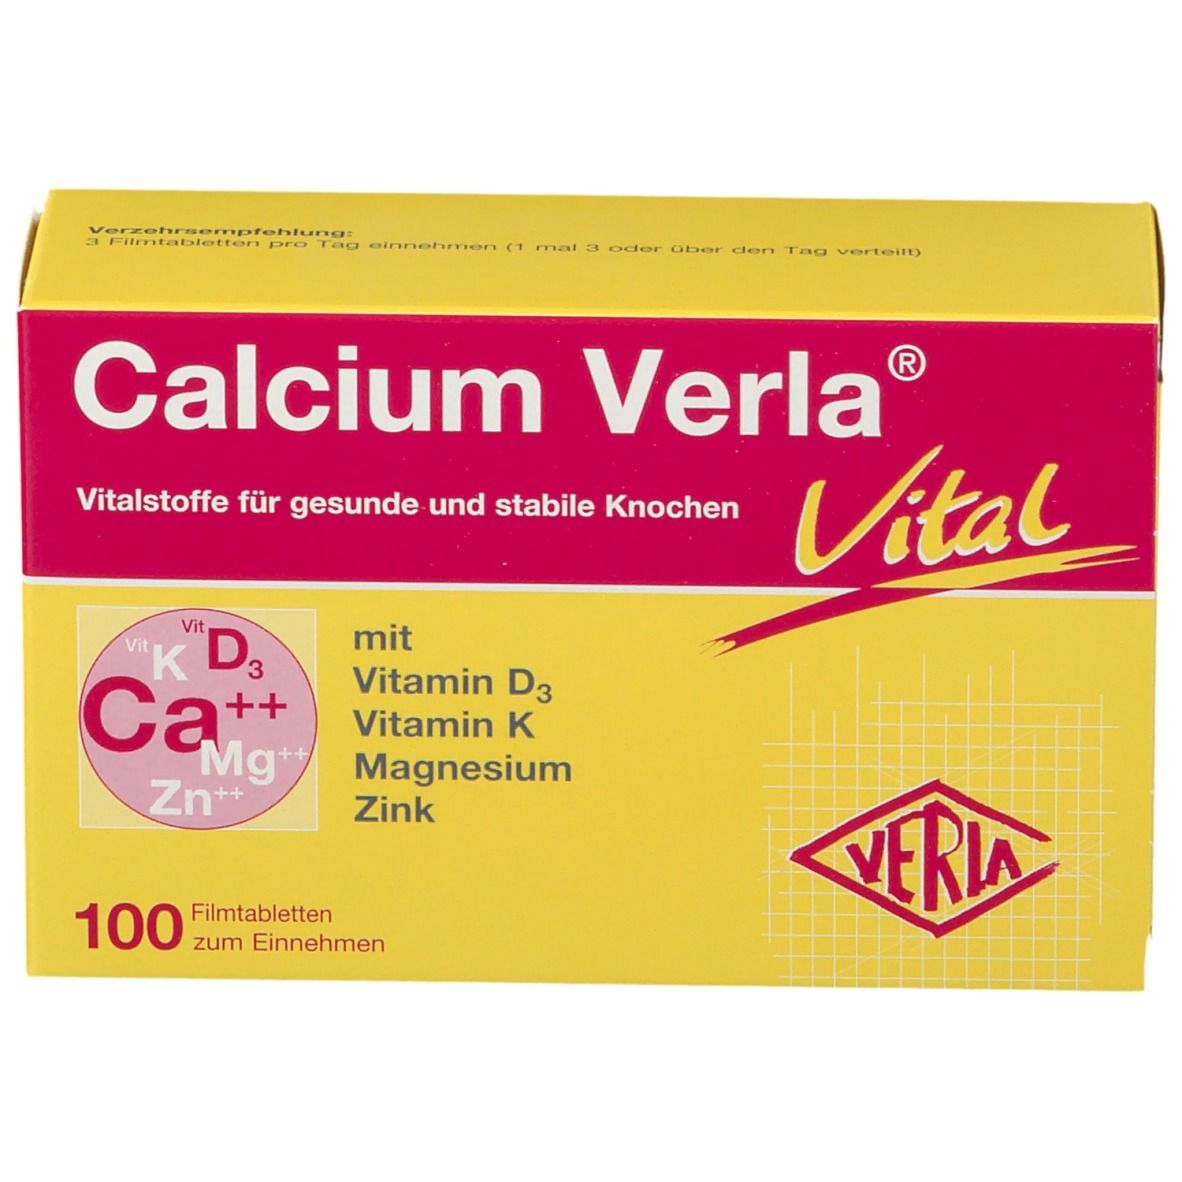 Calcium Verla® Vital